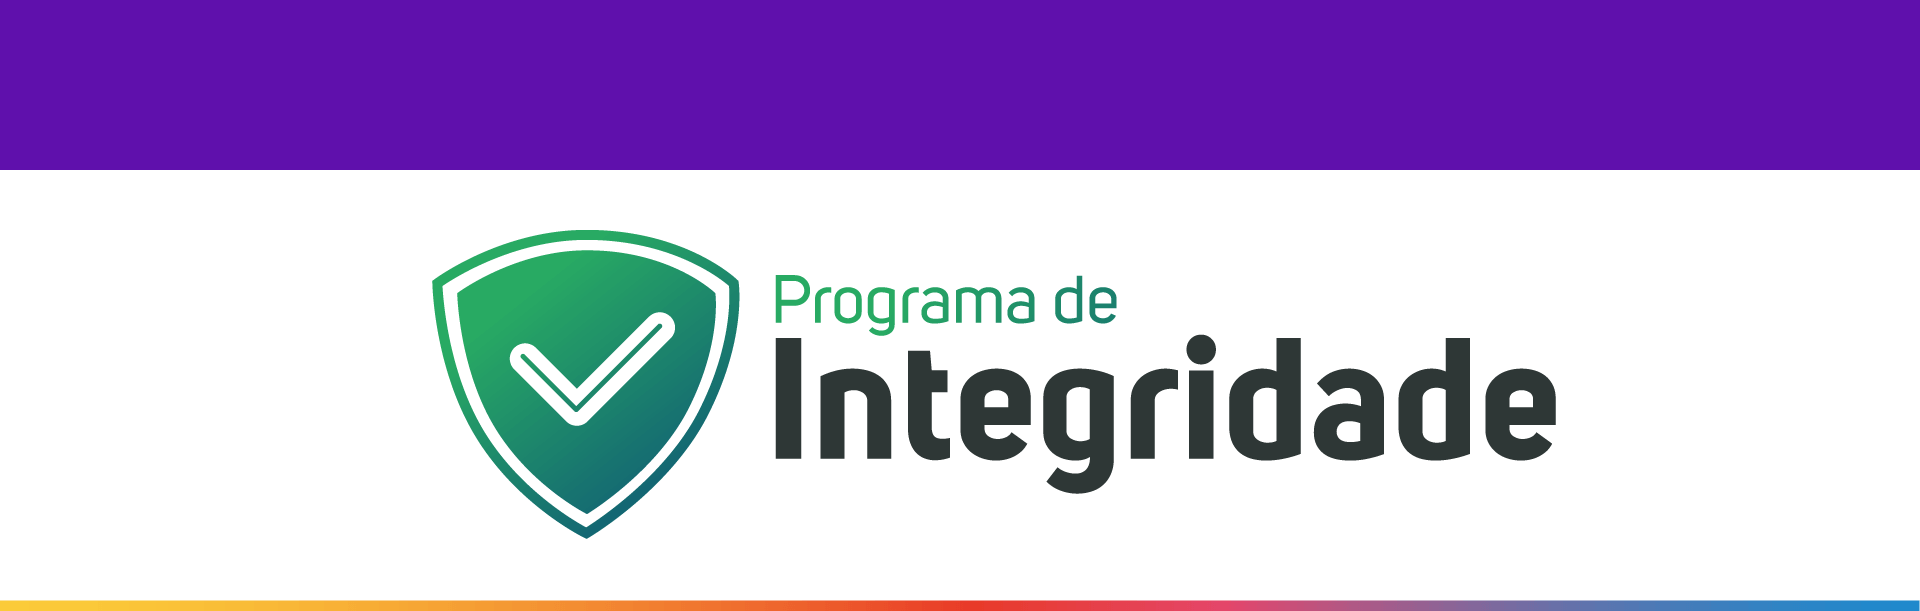 Programa de Integridade